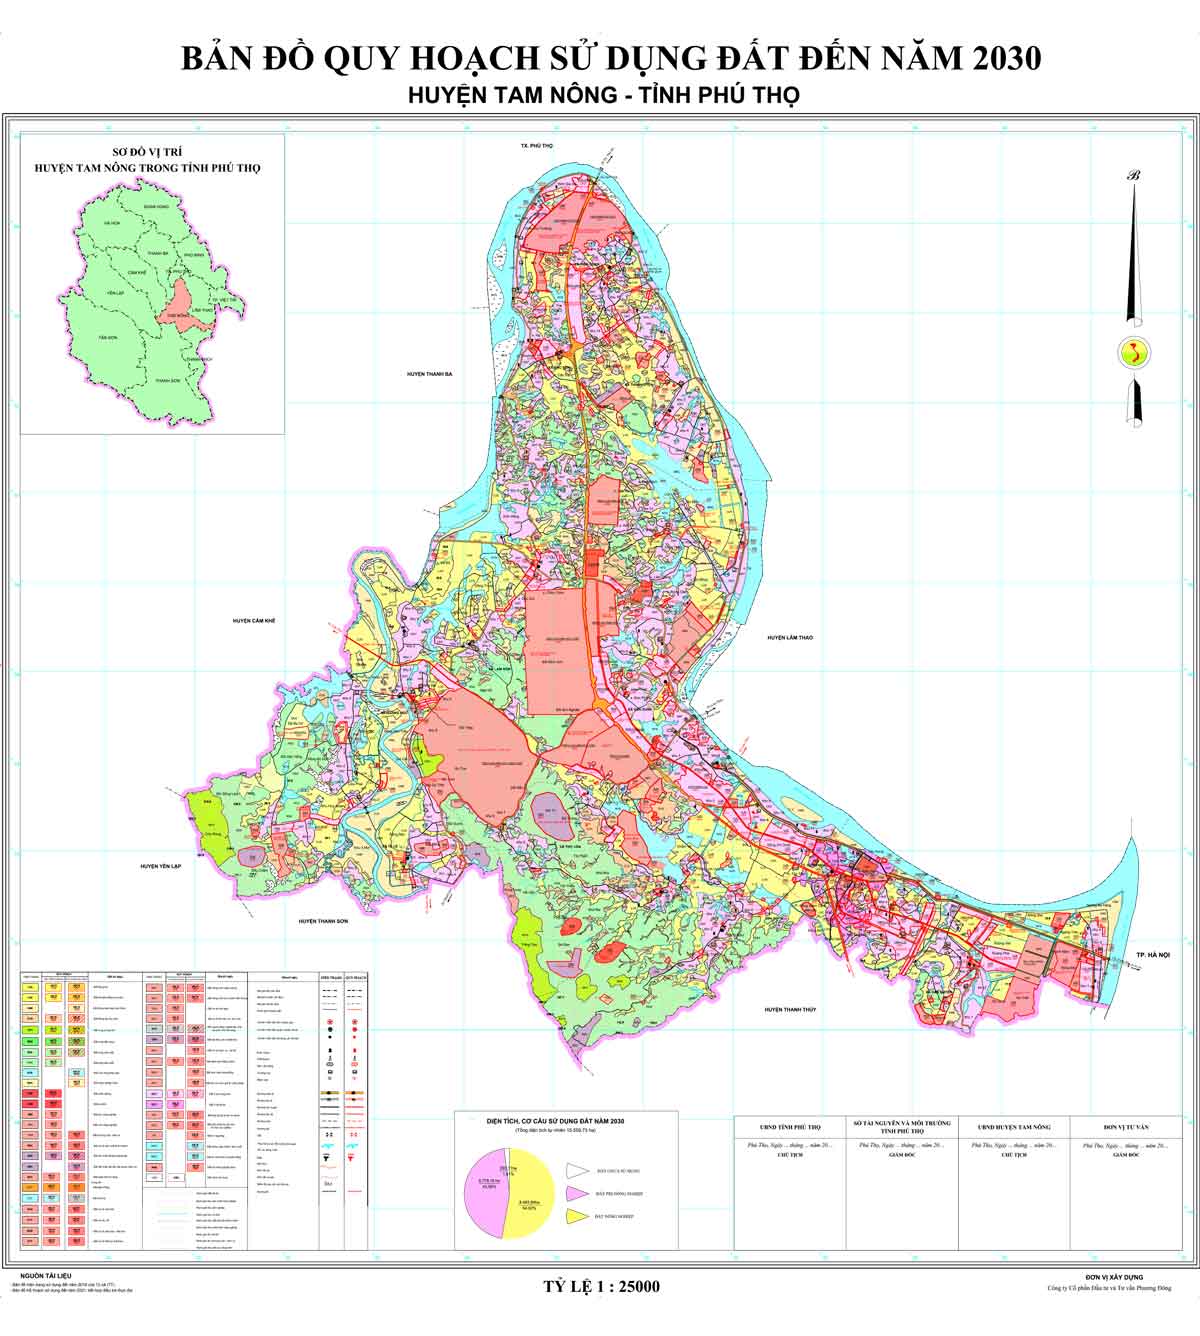 Bản đồ QHSDĐ huyện Tam Nông đến năm 2030